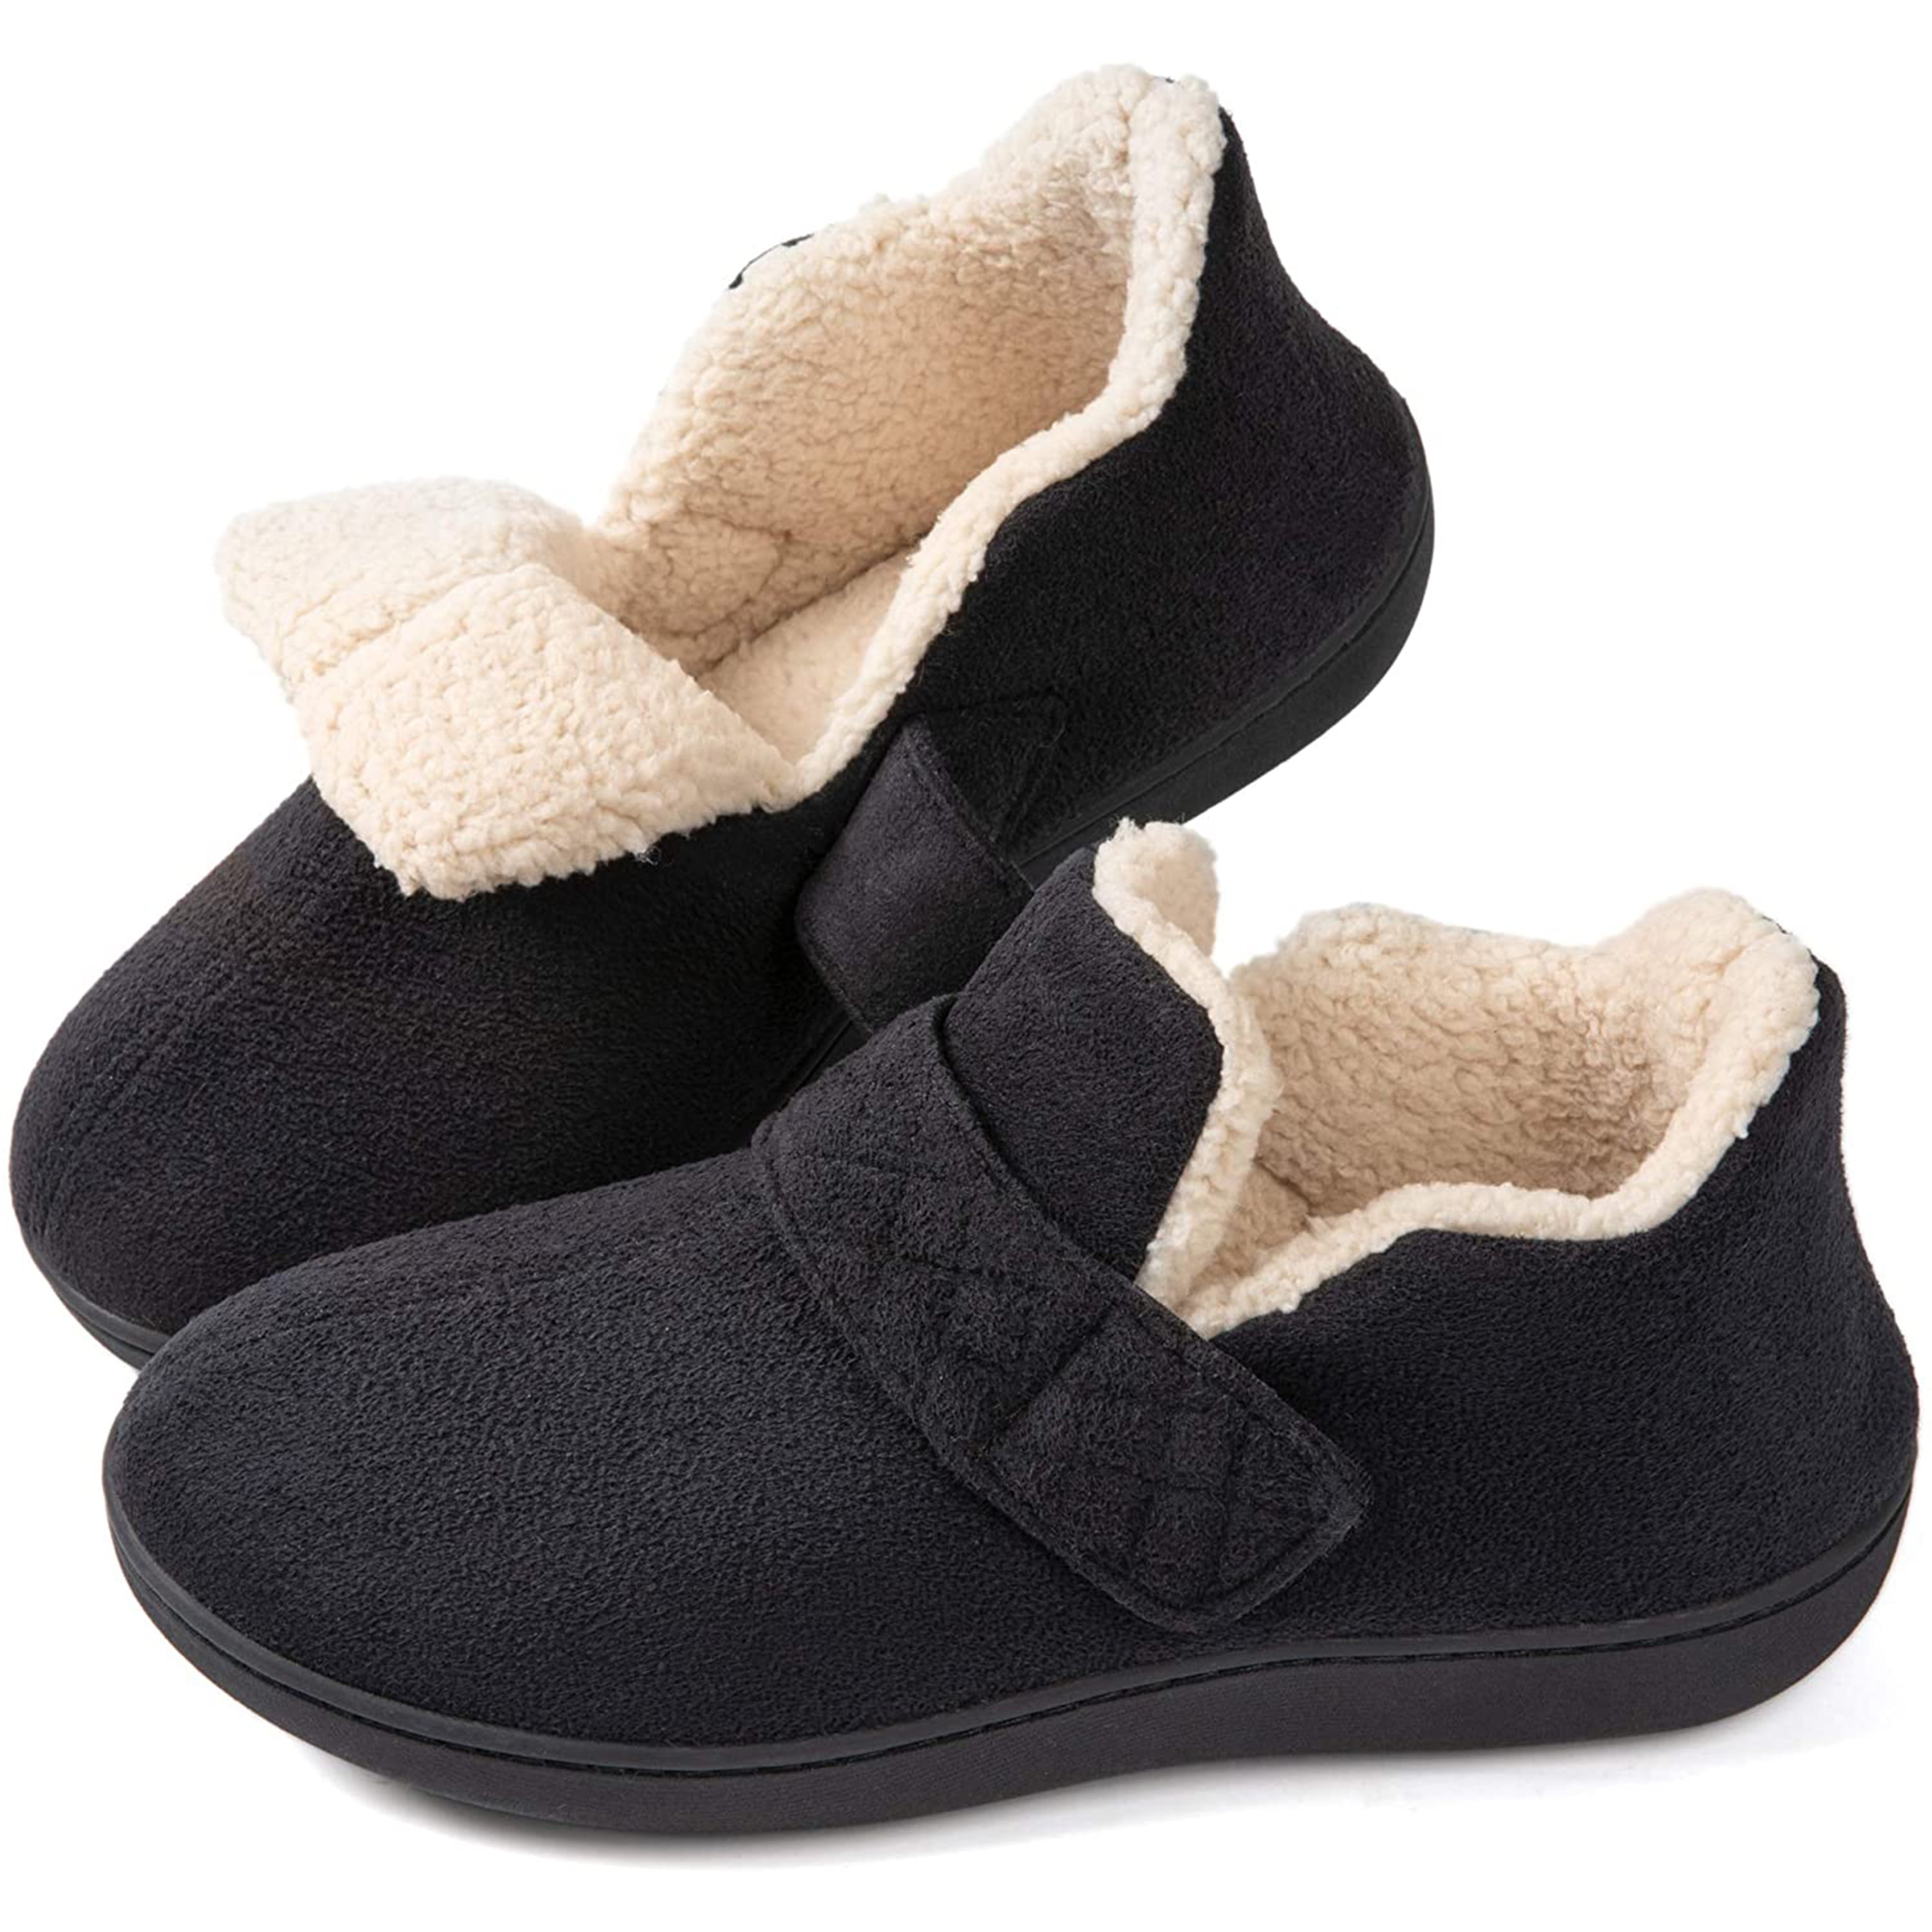 Zigzagger Women/’s Breathable Knit Slippers Cozy Memory Foam House Shoes Nonslip Rubber Sole Footwear